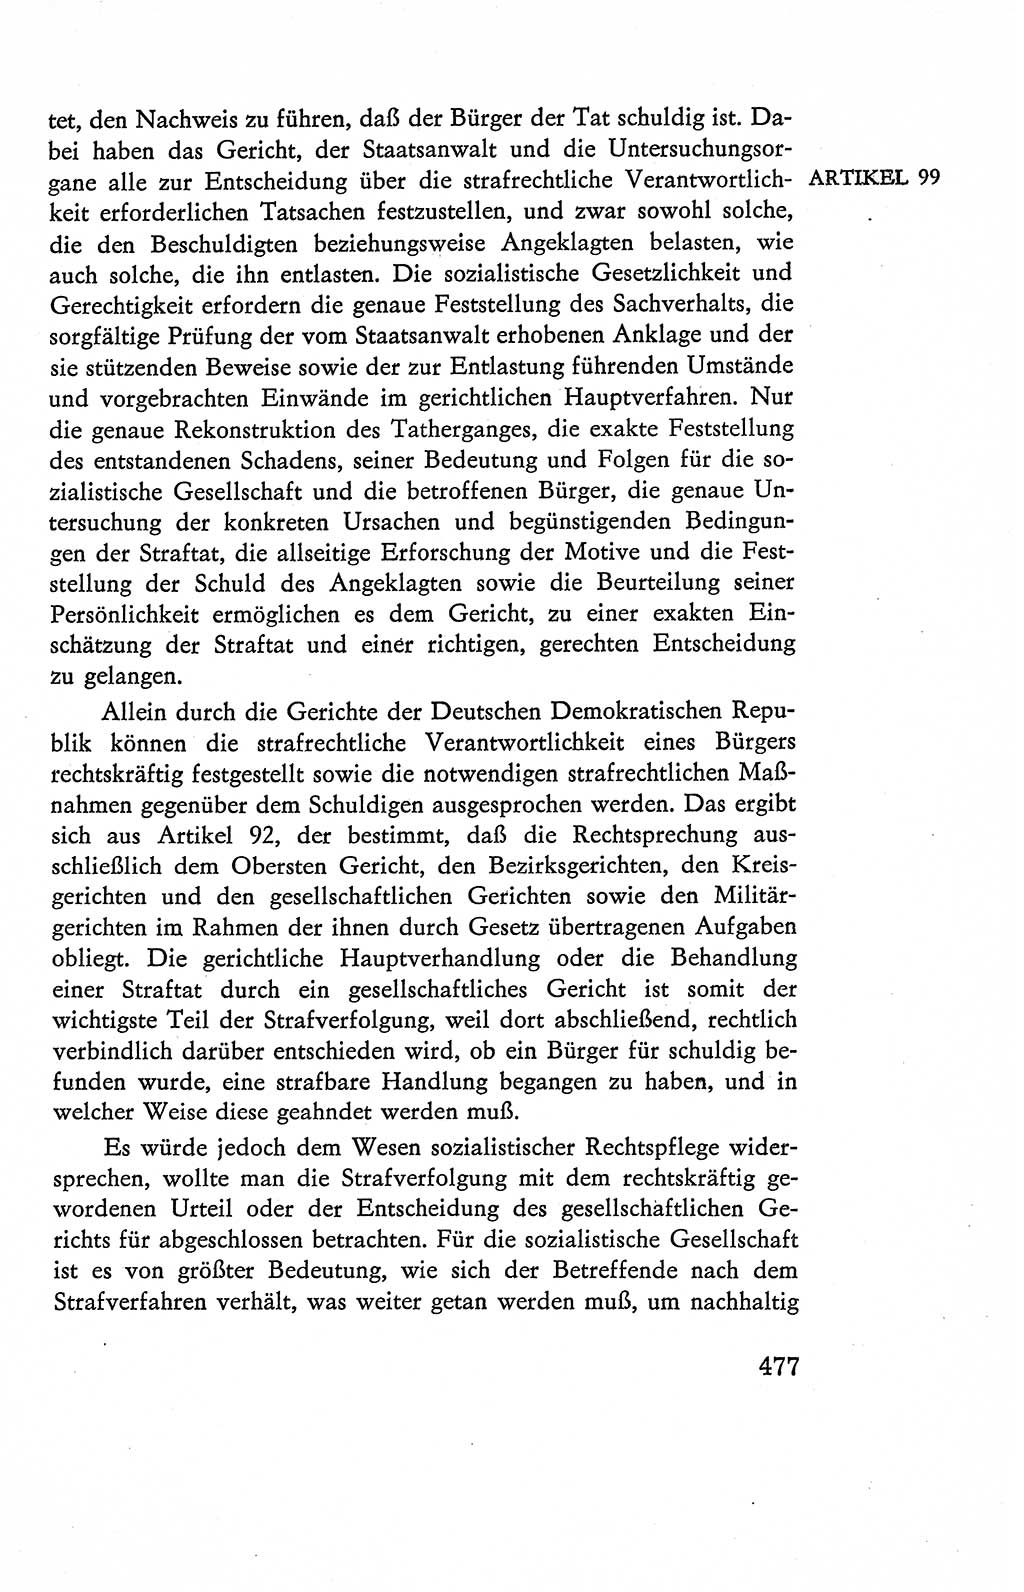 Verfassung der Deutschen Demokratischen Republik (DDR), Dokumente, Kommentar 1969, Band 2, Seite 477 (Verf. DDR Dok. Komm. 1969, Bd. 2, S. 477)